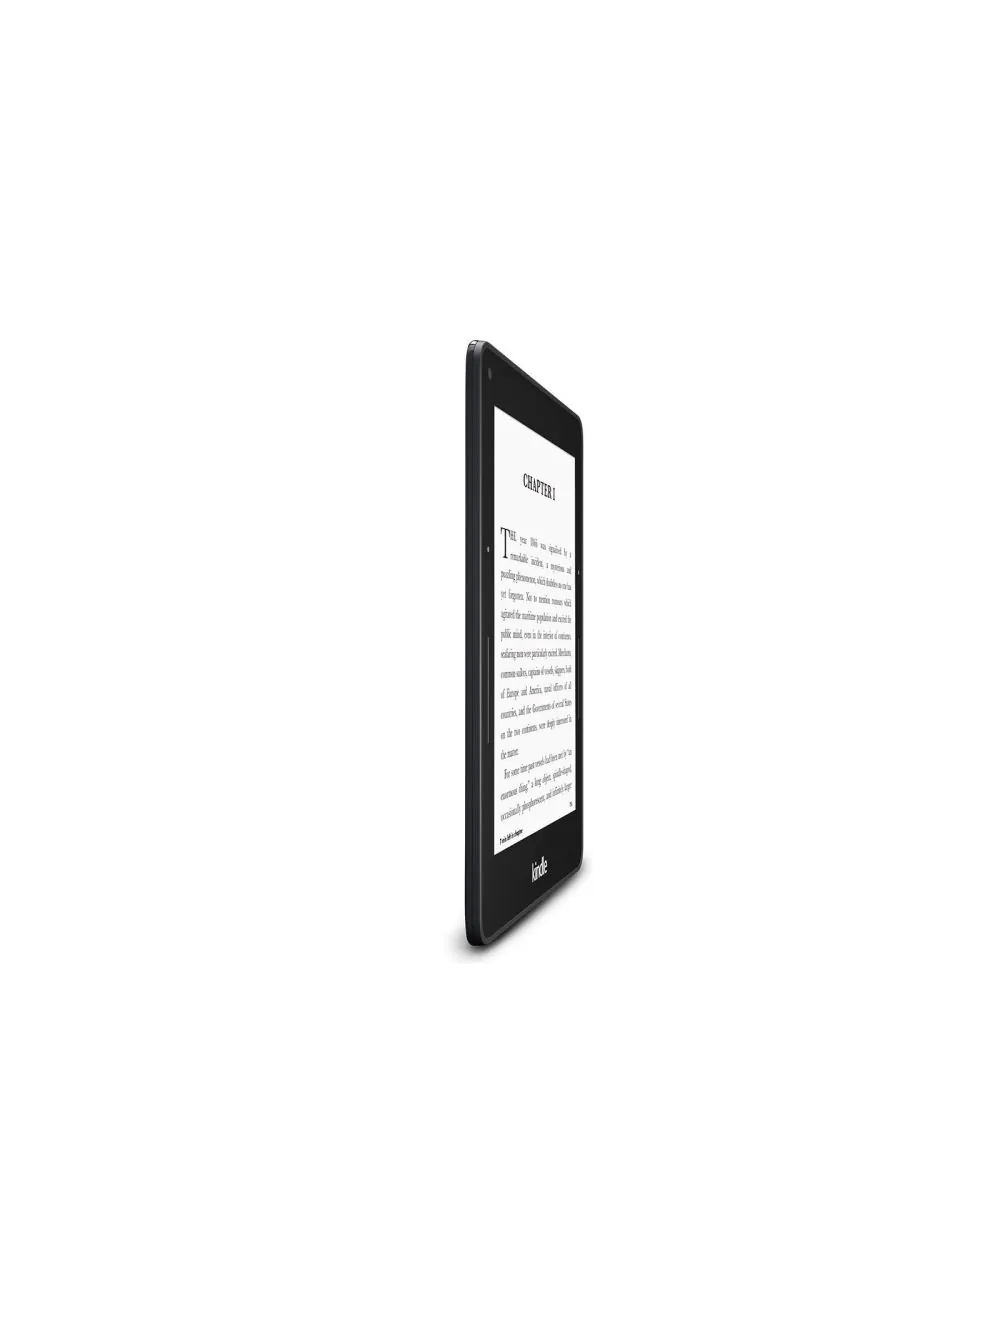 Kindle Voyage sẽ là sự lựa chọn tuyệt vời cho bạn để nâng cao đam mê đọc sách của mình. Với độ phân giải cao và đèn nền hiện đại, bạn sẽ có những trải nghiệm đọc sách chưa từng thấy. Hãy cập nhật thông tin về Kindle Voyage để có thể sở hữu được một máy đọc sách chất lượng nhất.